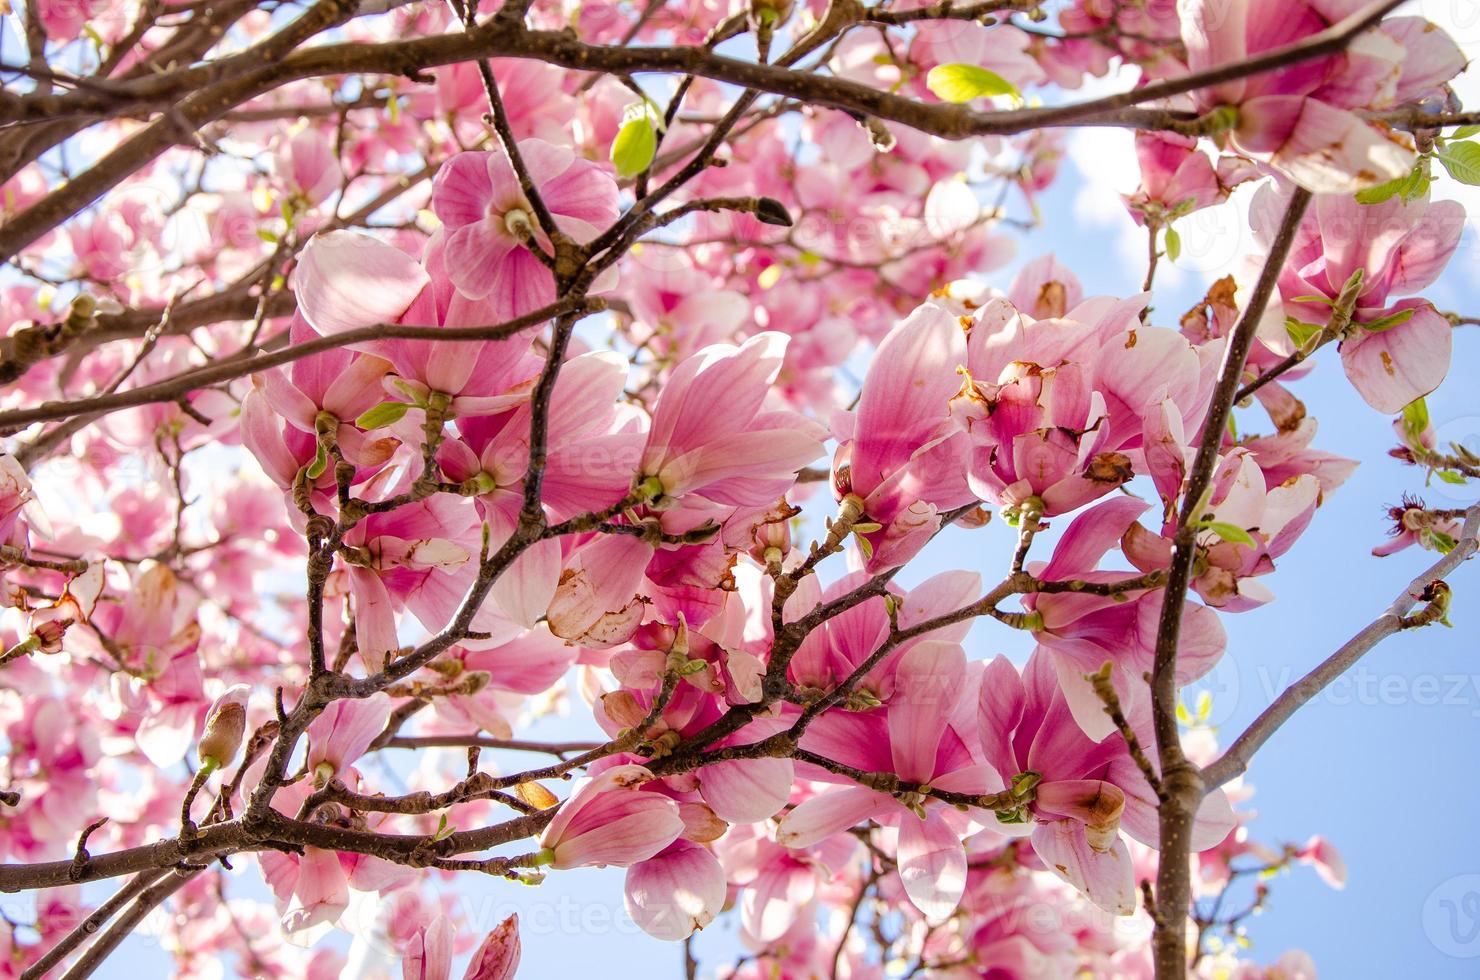 blommande magnolia i vårblommor på ett träd mot en ljusblå himmel foto